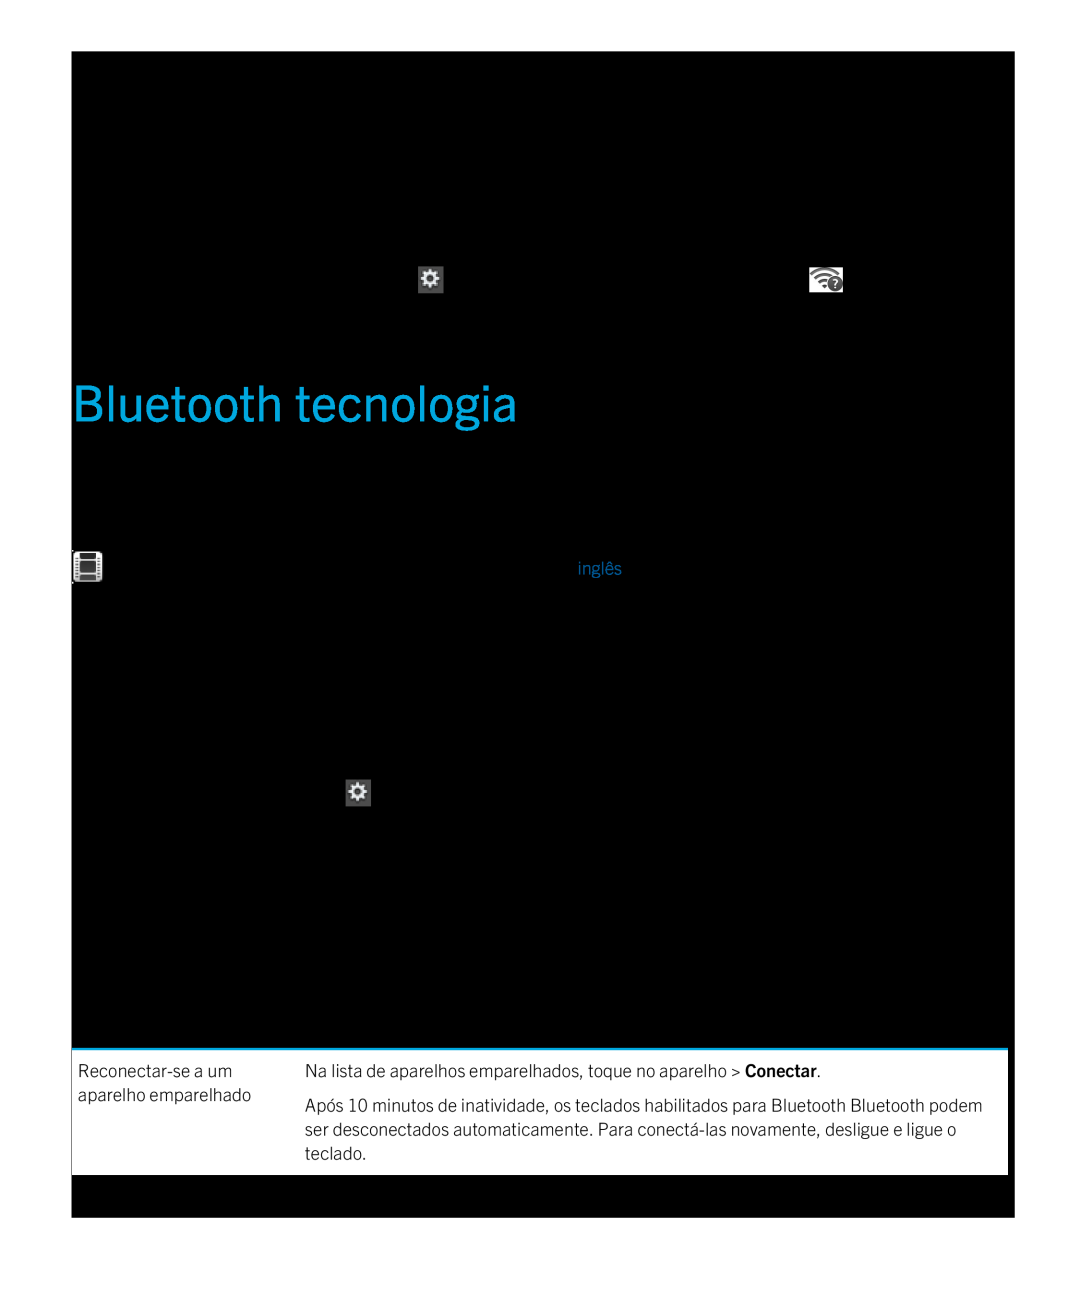 Blackberry 2.0.1 Bluetooth tecnologia, Conecte-se a um aparelho habilitado para Bluetooth, Defina Bluetooth como Ligar 